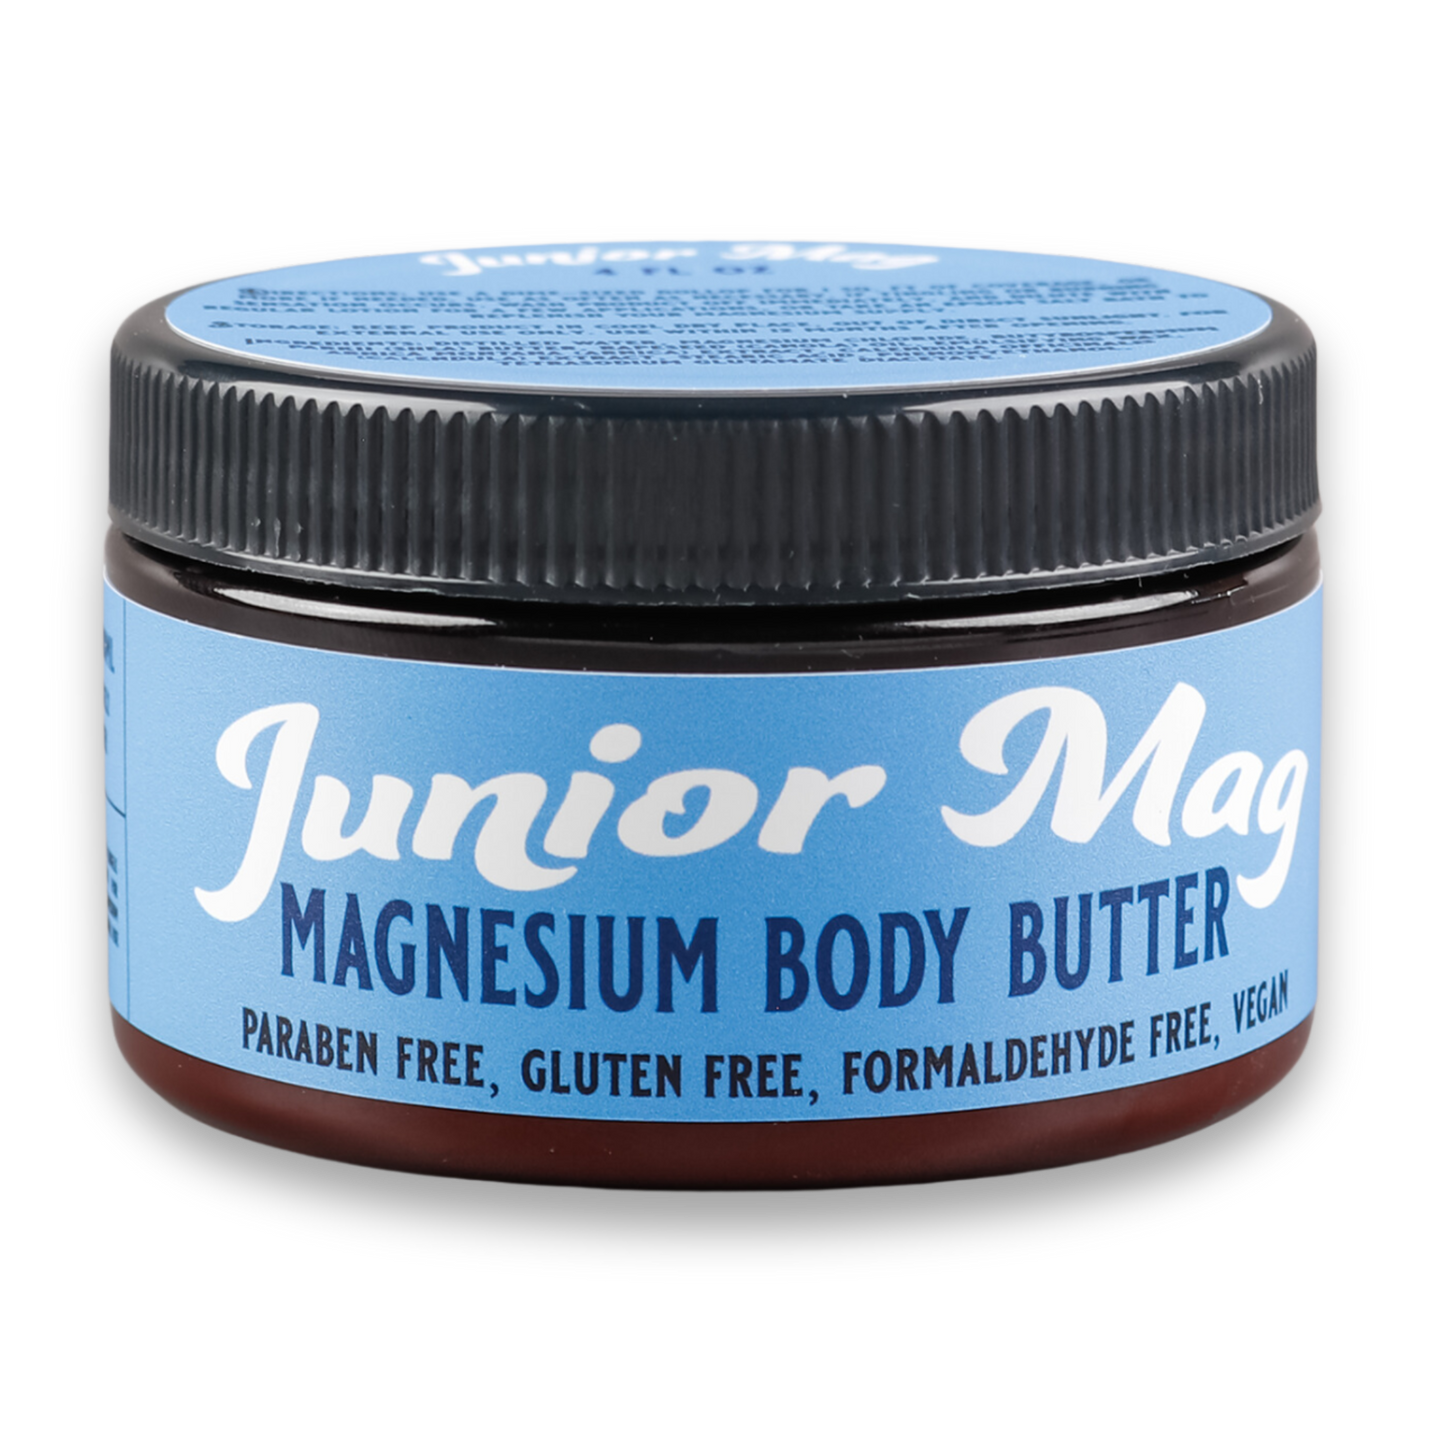 Junior Mag Magnesium Body Butter 4oz